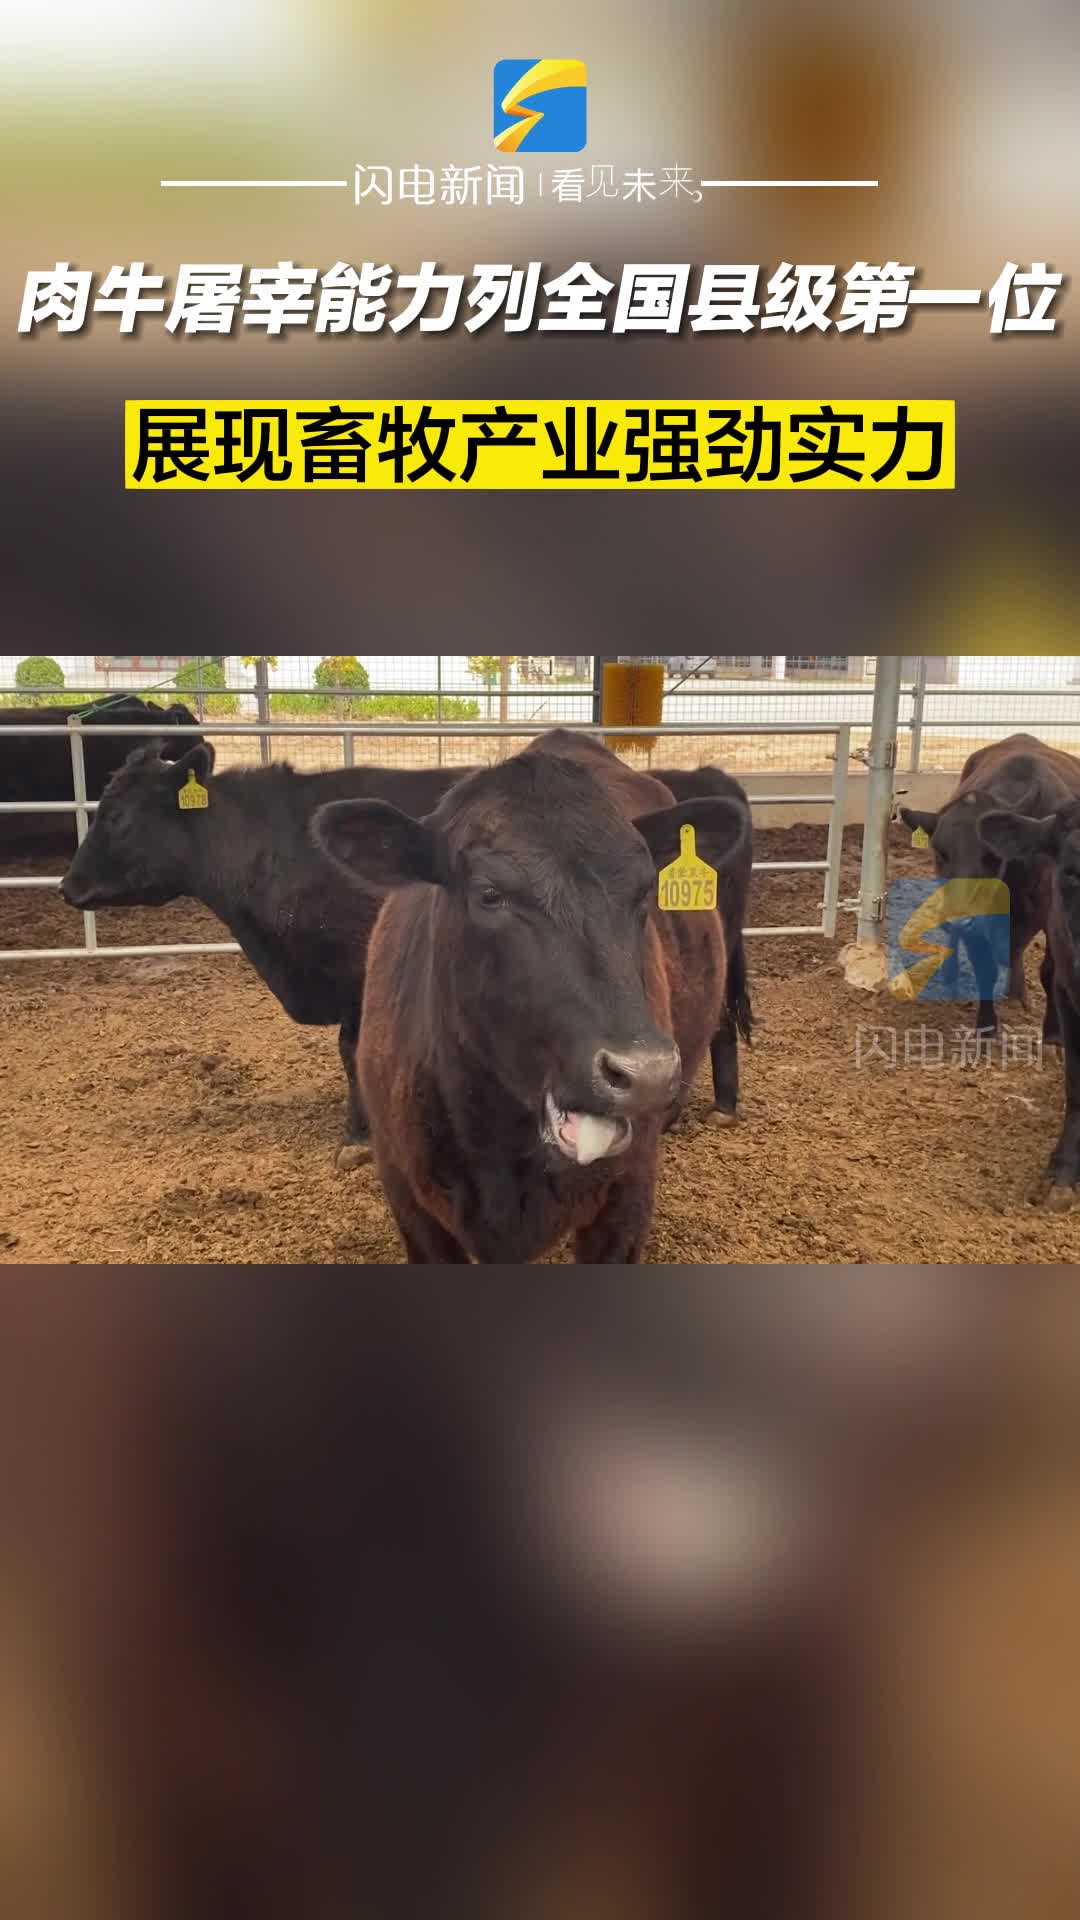 阳信：肉牛屠宰能力列全国县级第一位 展现畜牧产业强劲实力